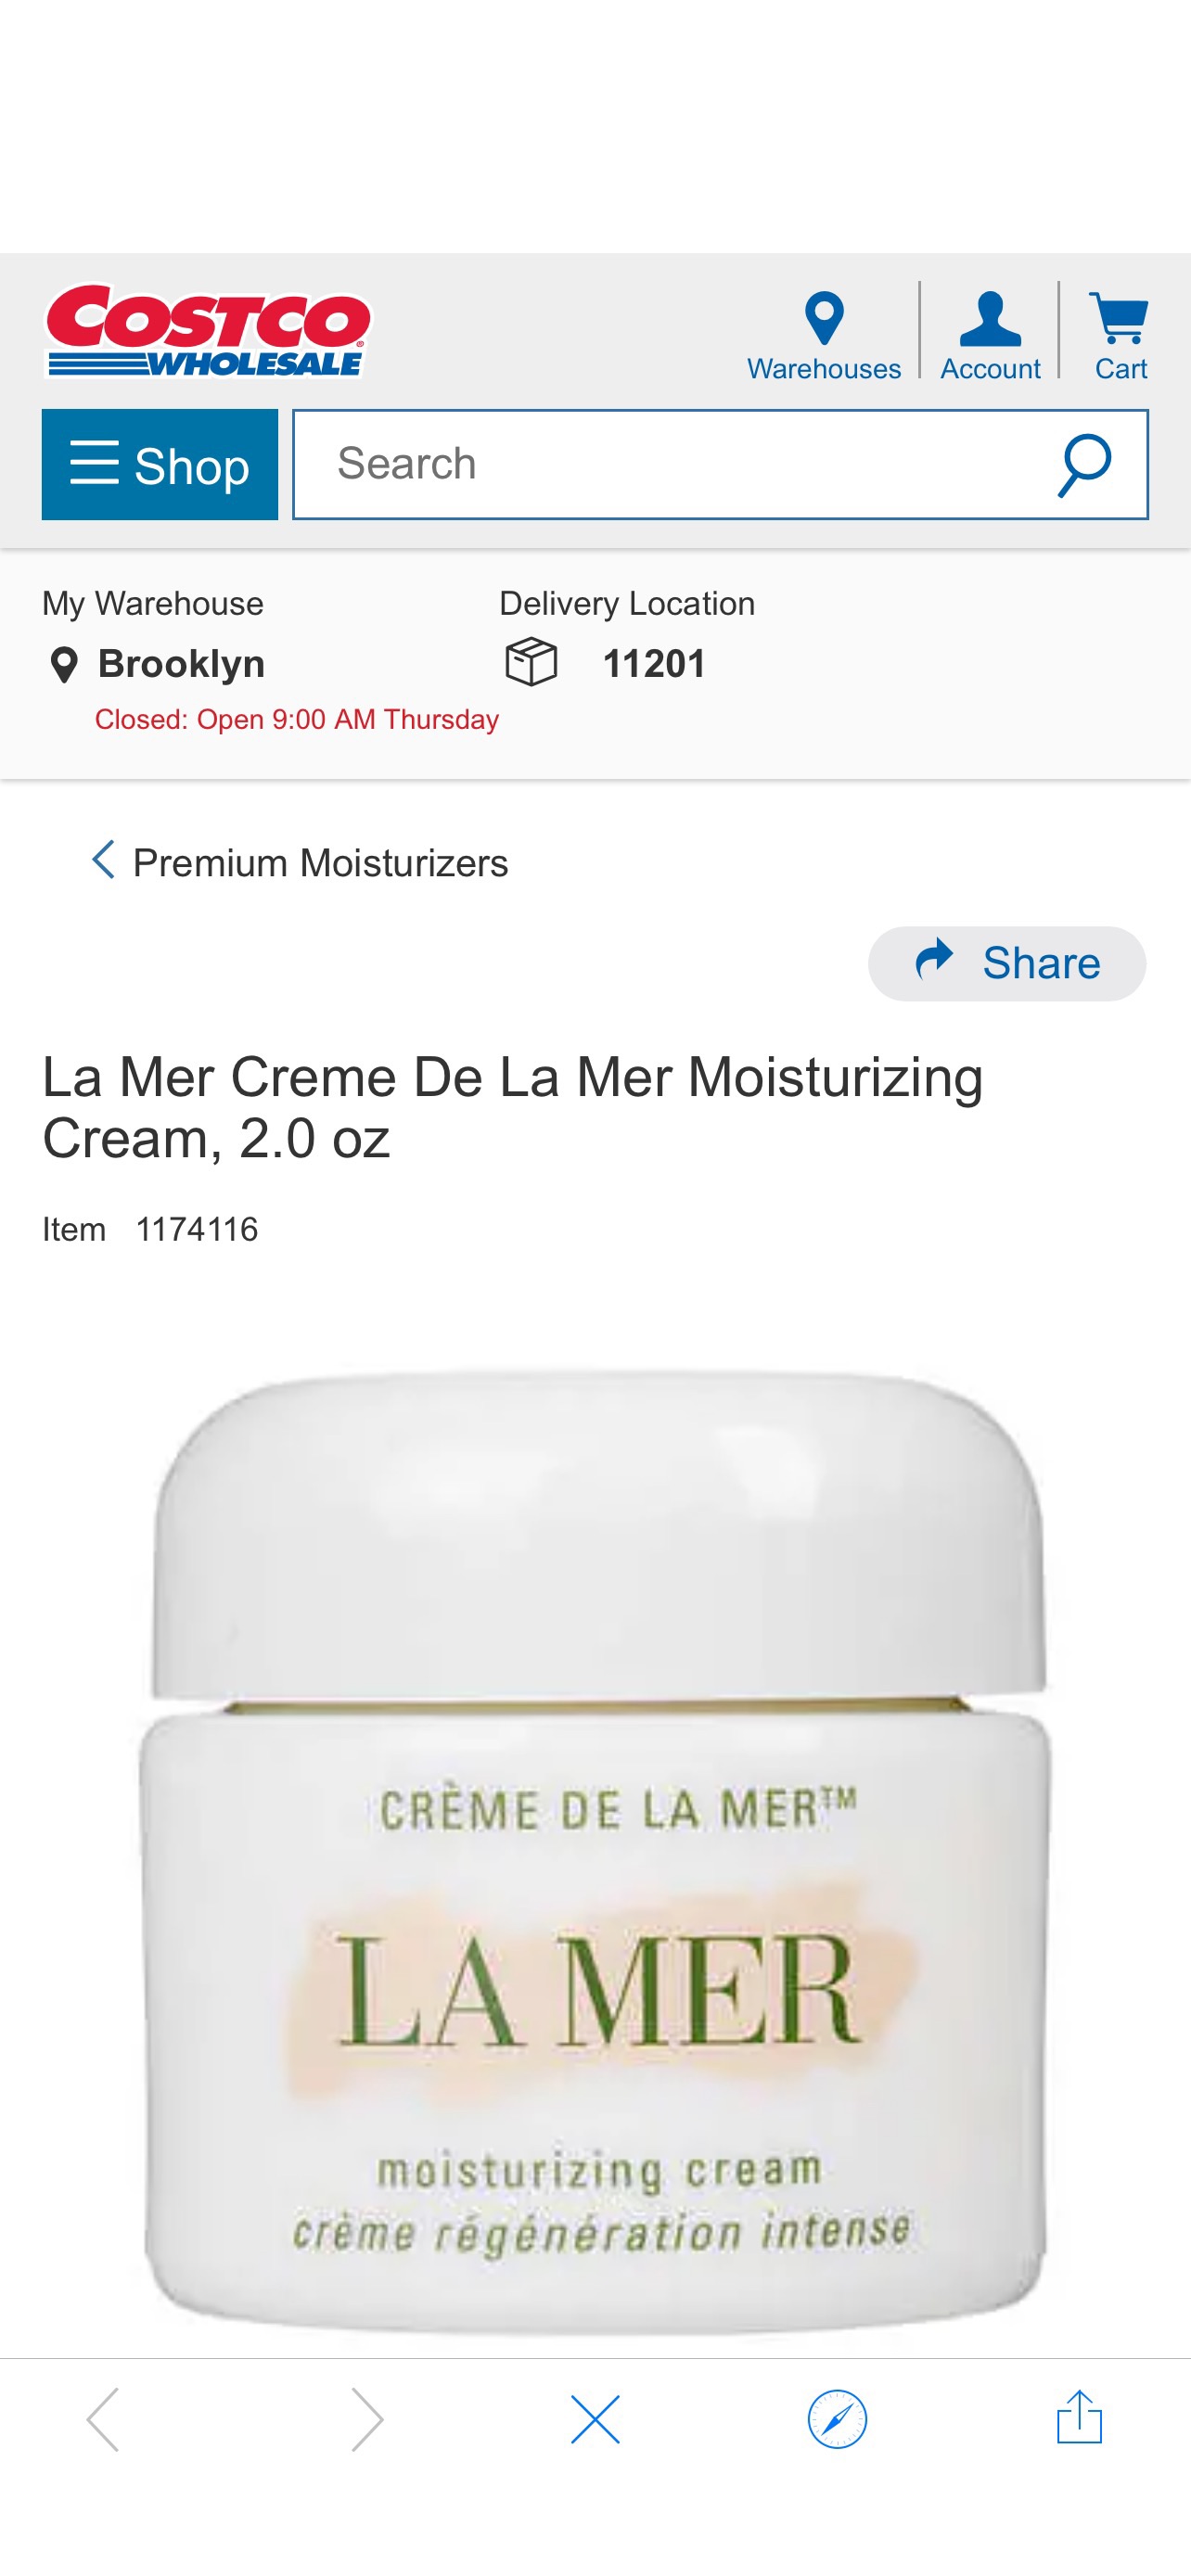 La Mer Creme De La Mer Moisturizing Cream, 2.0 oz | Costco